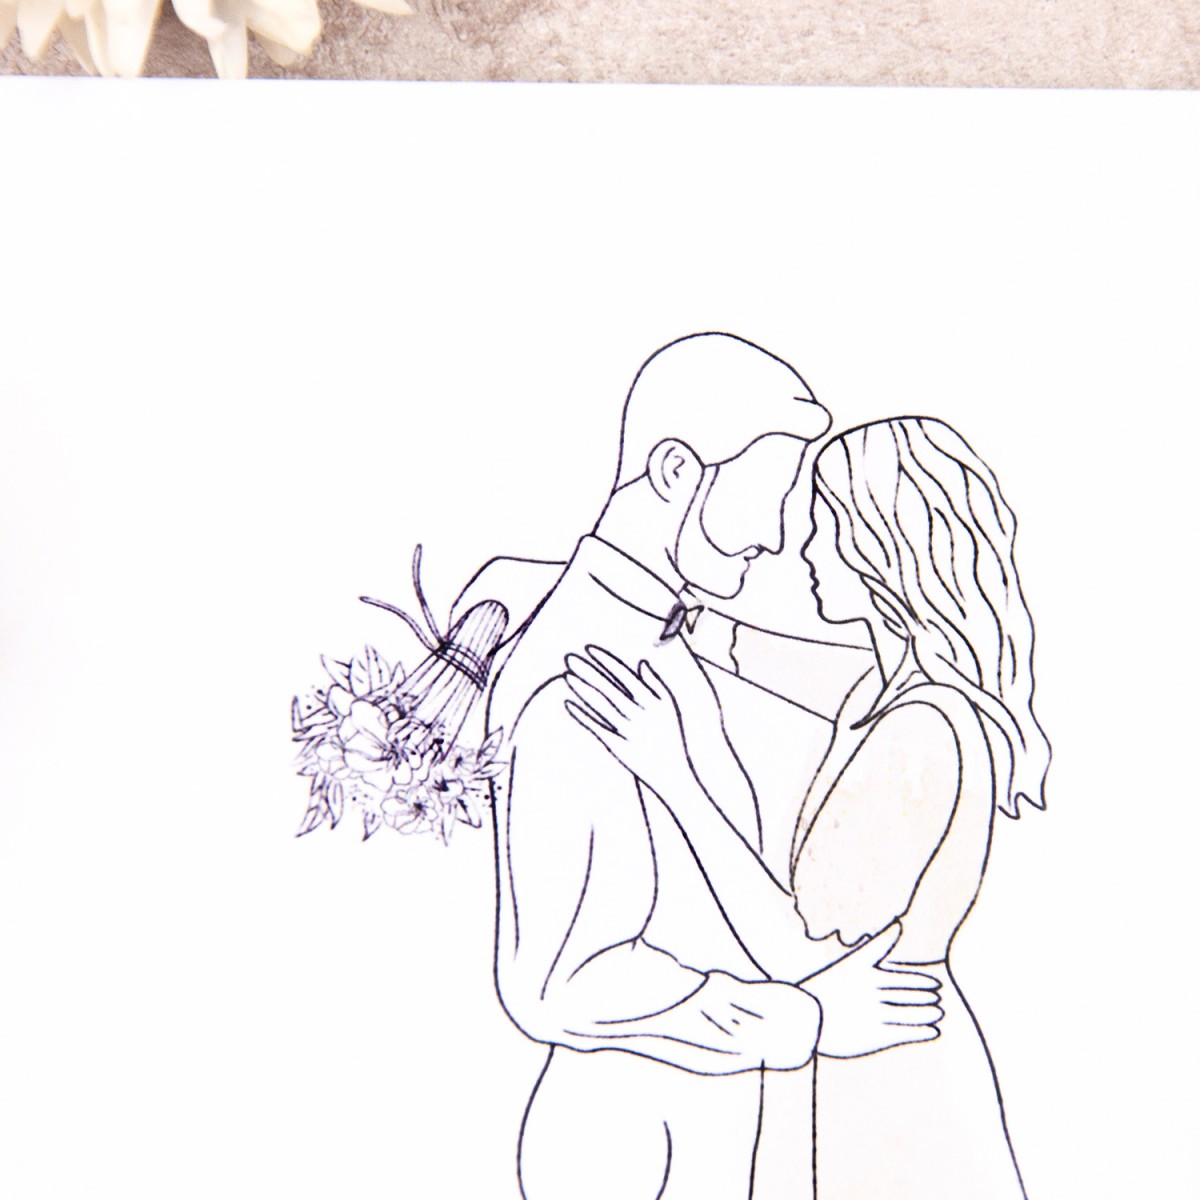 Minimalistyczne zaproszenia ślubne ze szkicowaną Parą Młodą - Hug Me